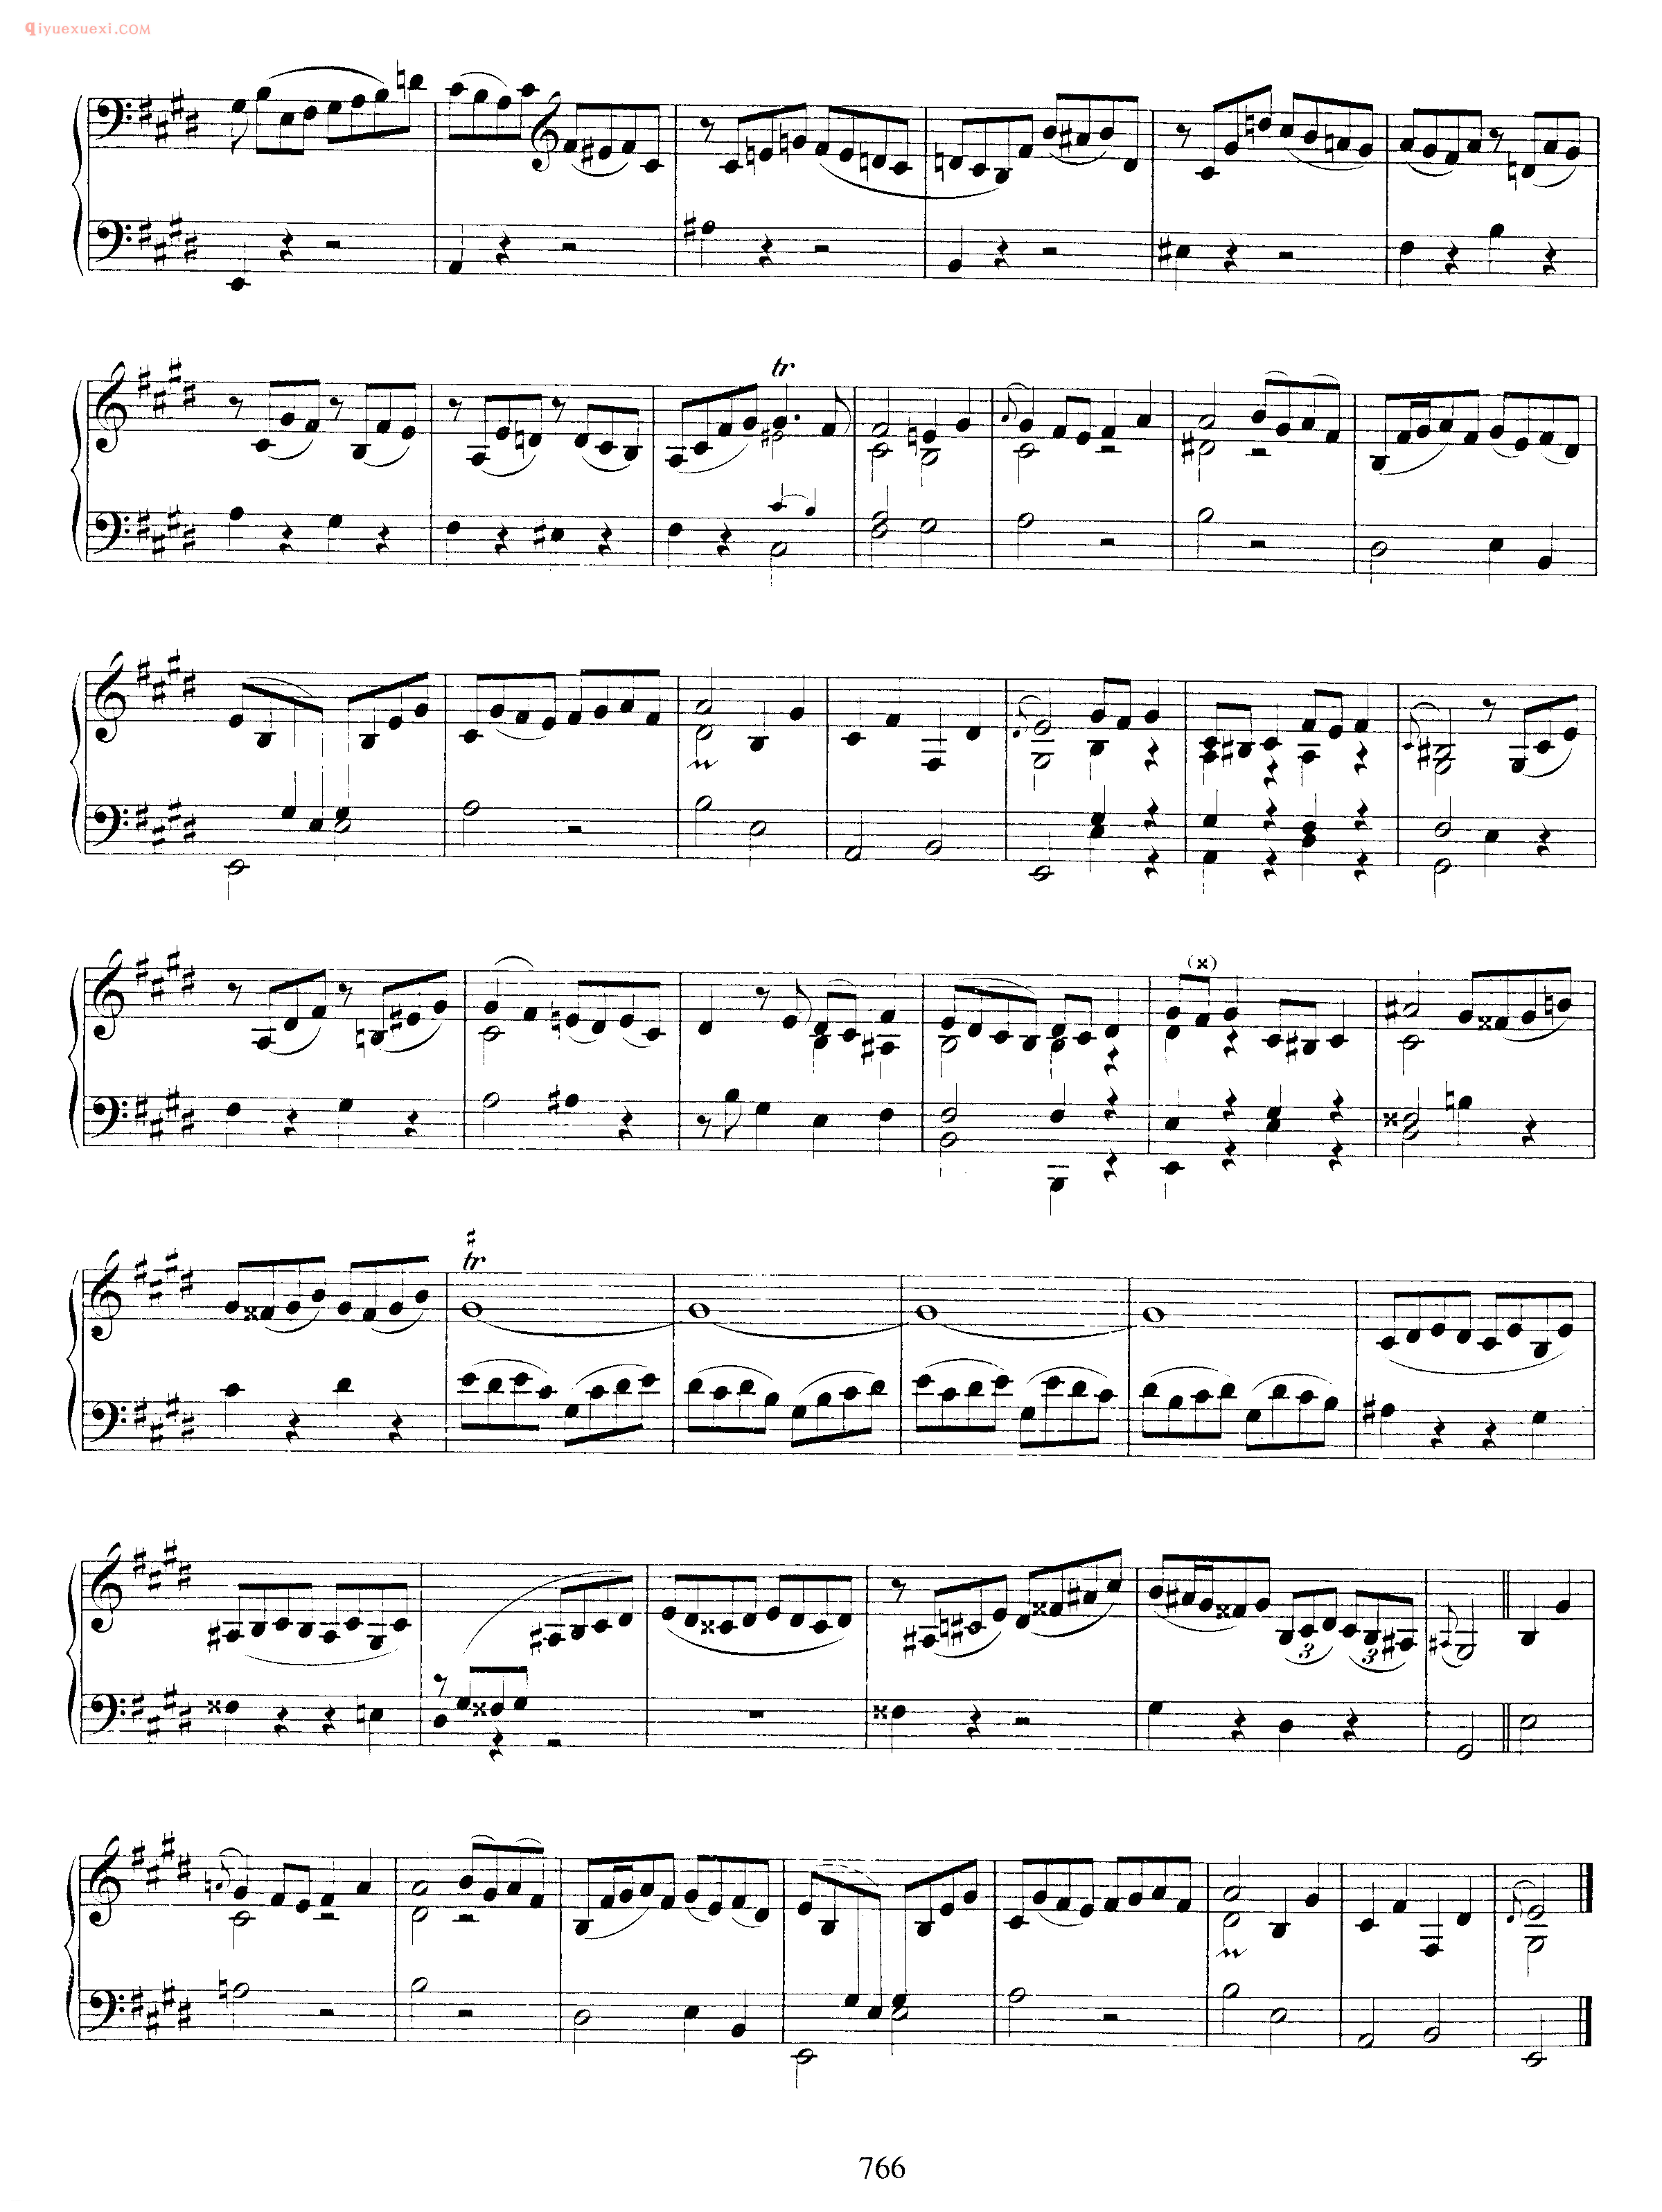 巴赫E大调第三无伴奏小提琴组曲_钢琴独奏版《Pratita_for Lute or Keyboard_in E Major BWV1006a》arranged from violin partita no.3 bwv 1006